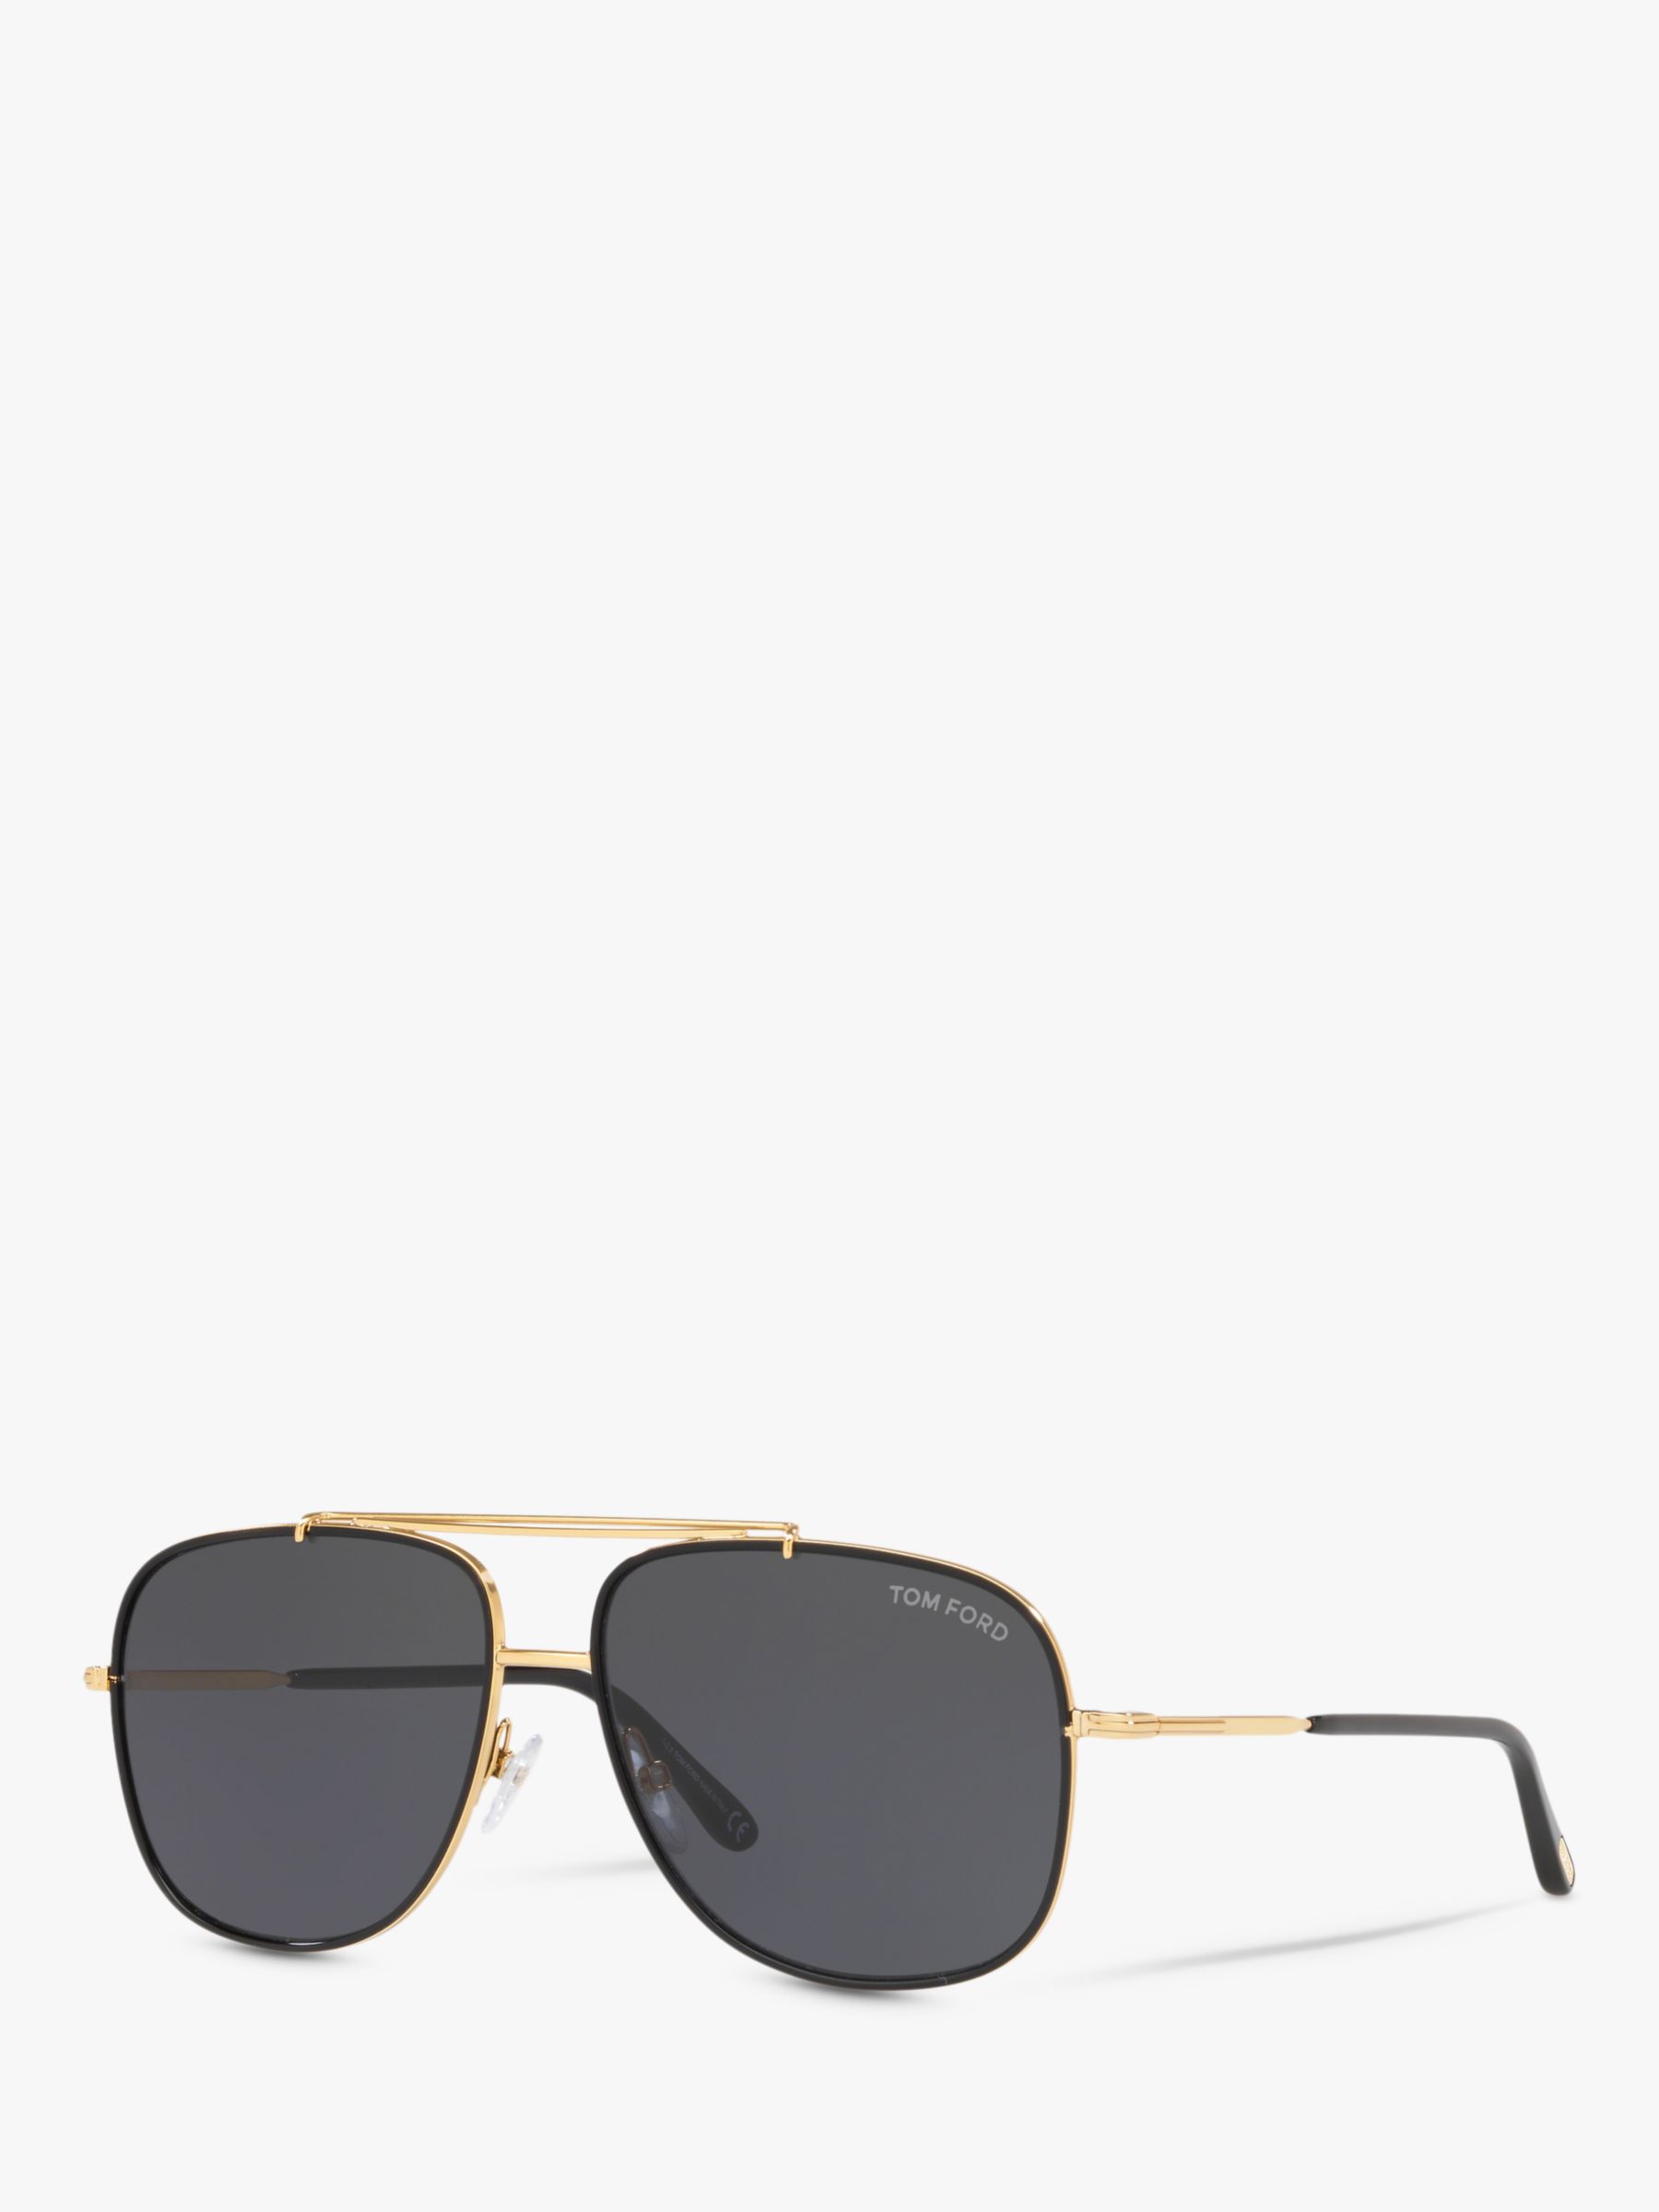 FORD FT0693 Men's Benton Square Sunglasses, Gold/Black at John Lewis & Partners